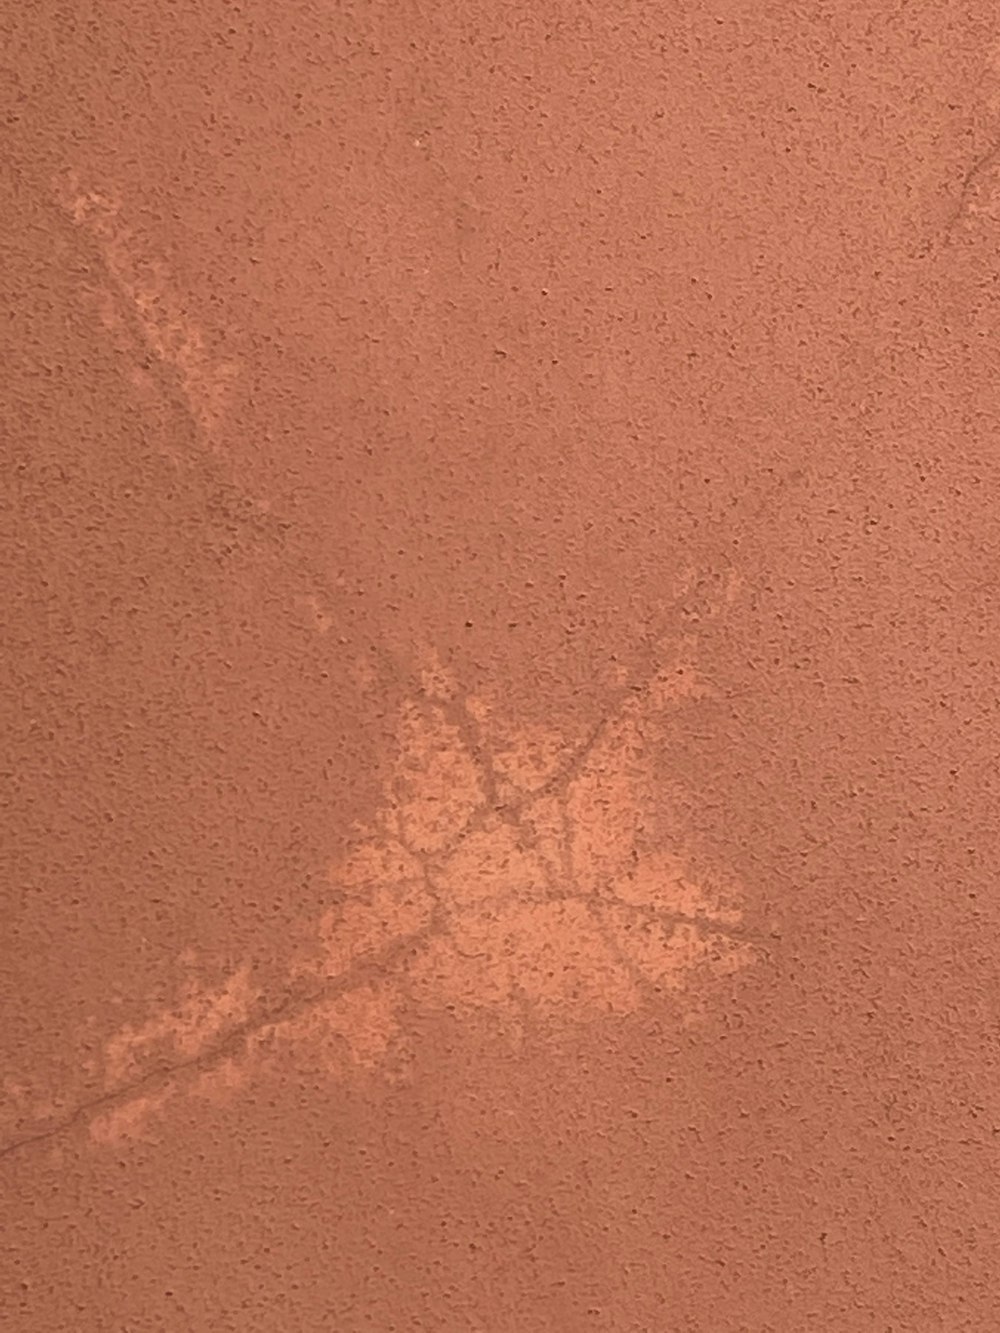 Ein Bild der Fußabdrücke einer Person im Sand